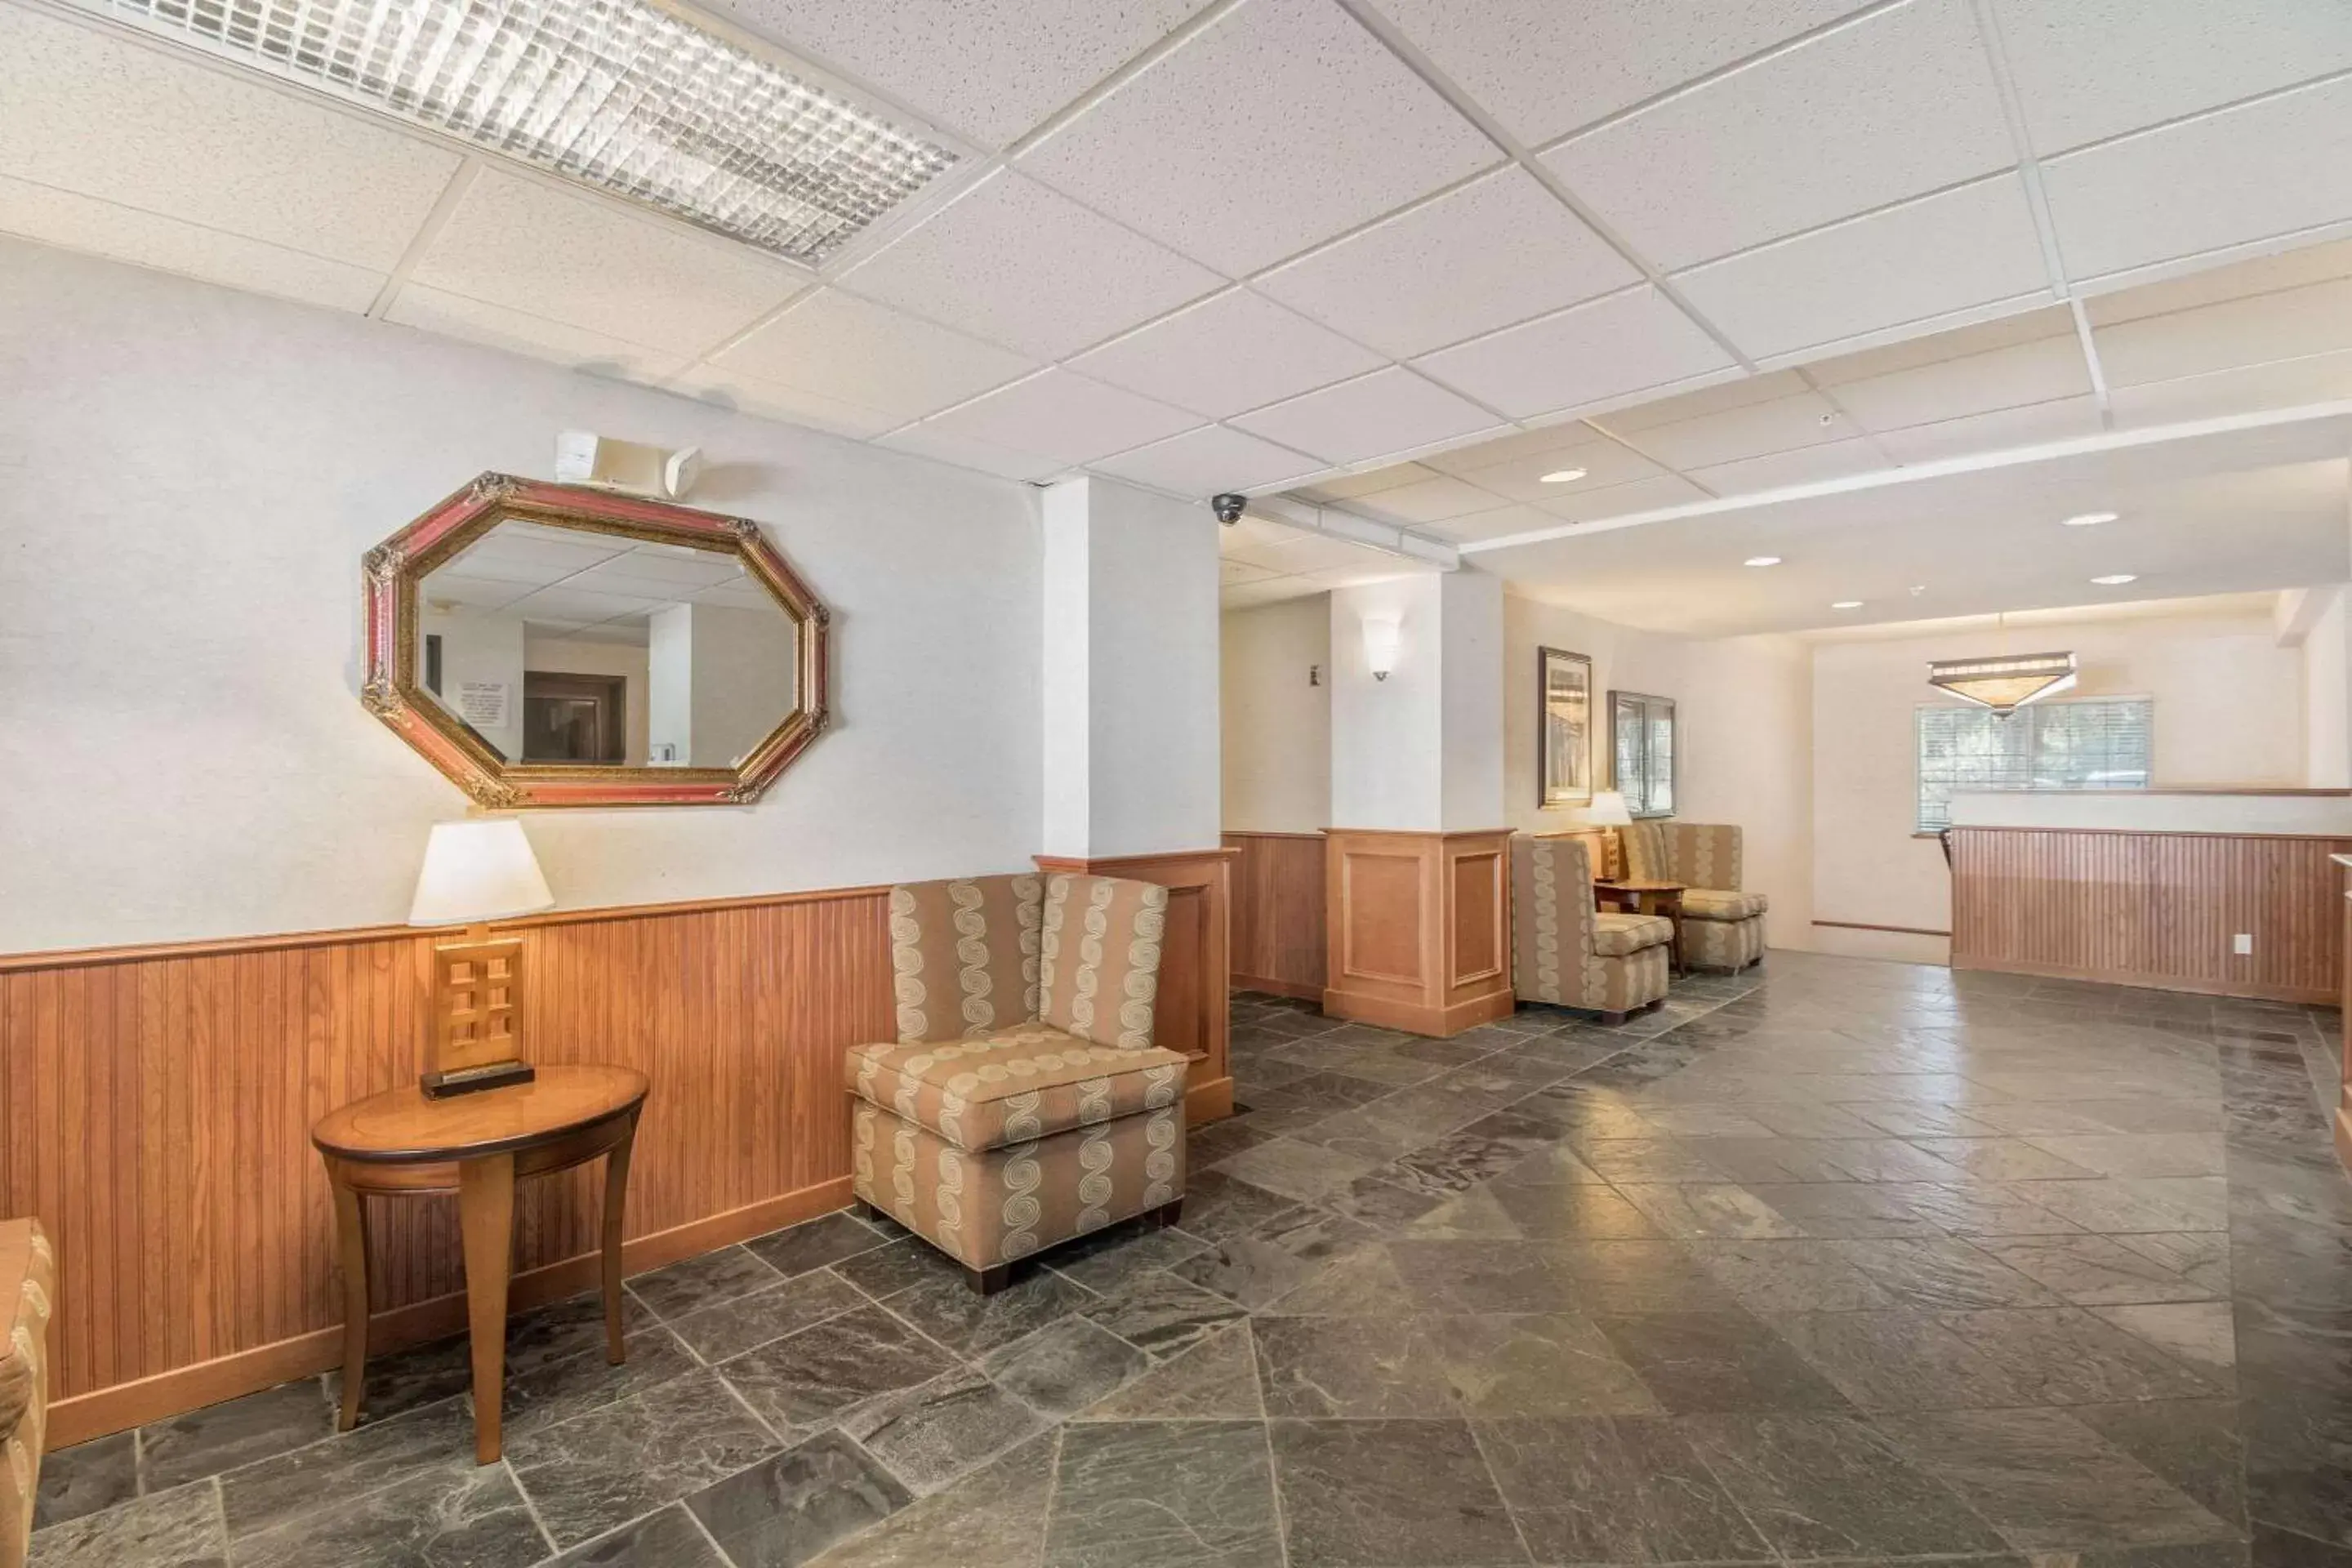 Lobby or reception in Quality Inn Gresham